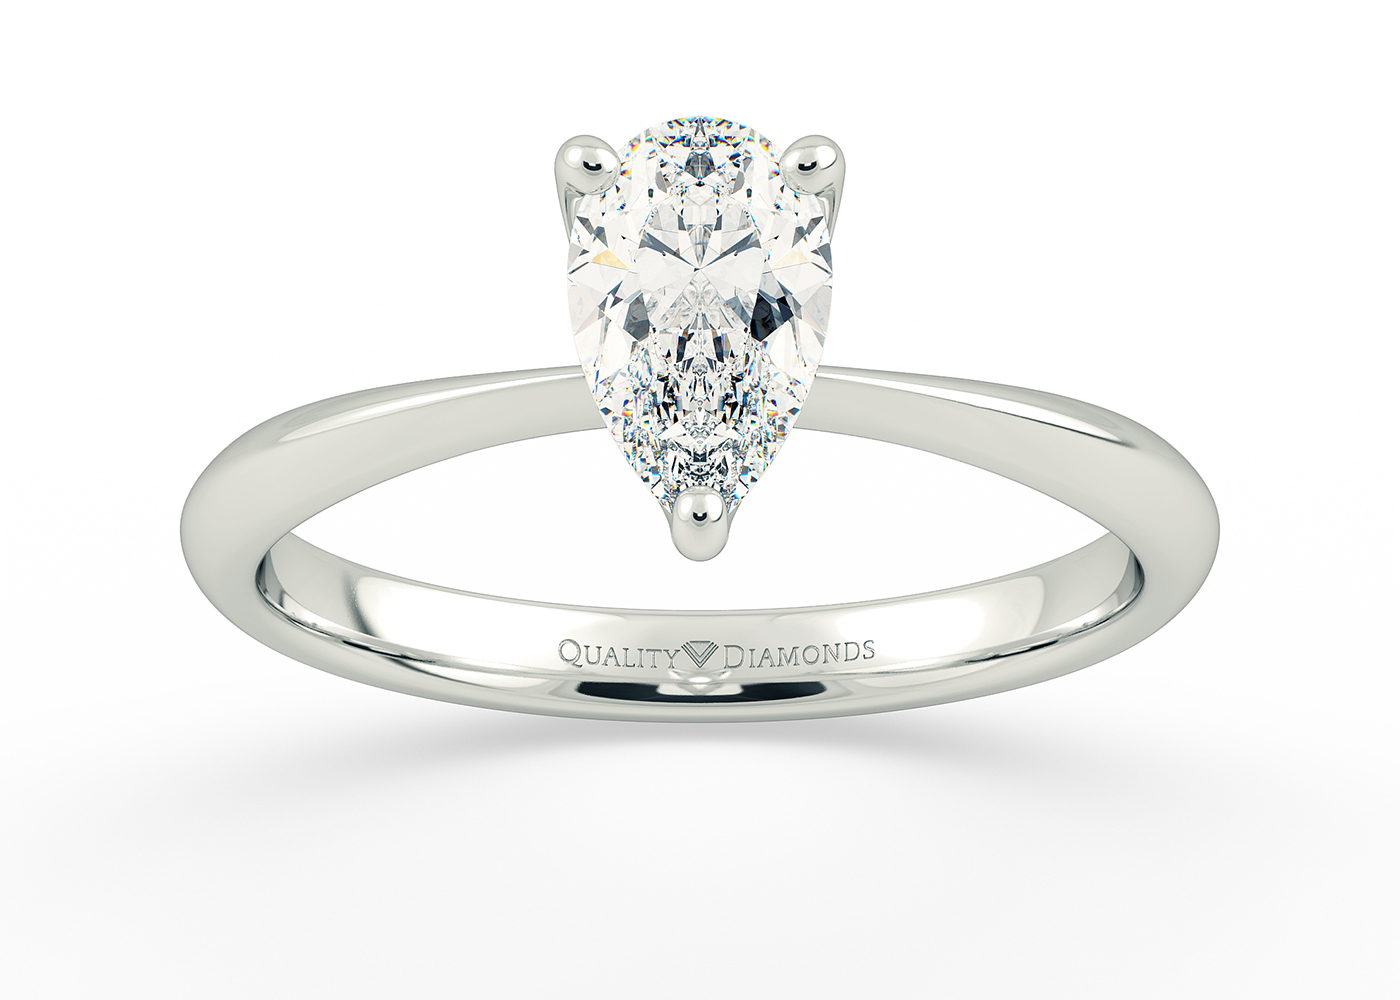 Half Carat Pear Solitaire Diamond Engagement Ring in Platinum 950